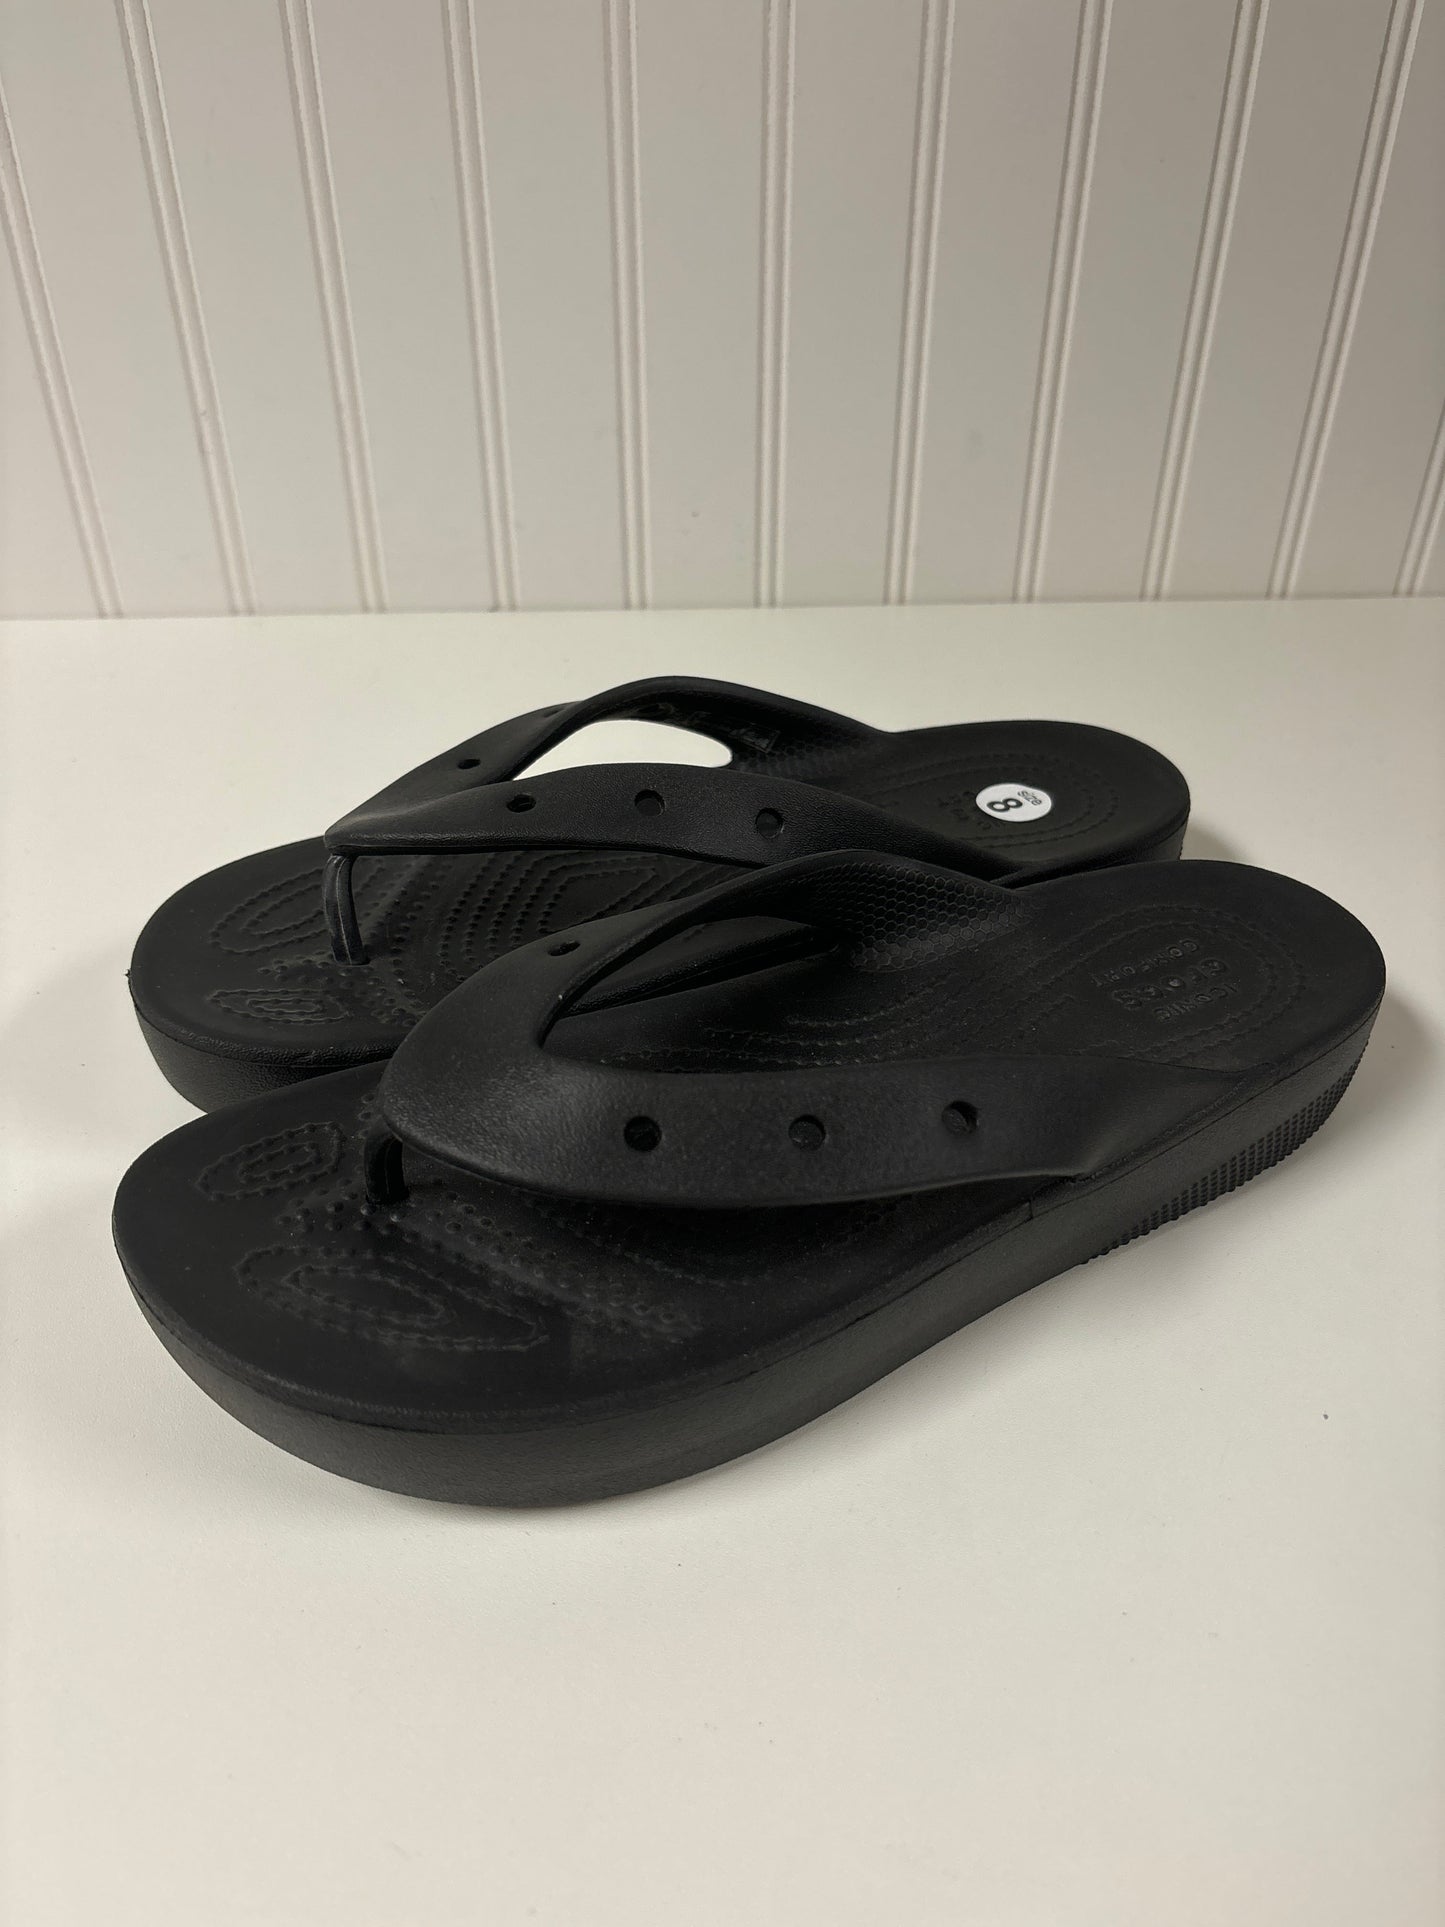 Black Sandals Flip Flops Crocs, Size 8